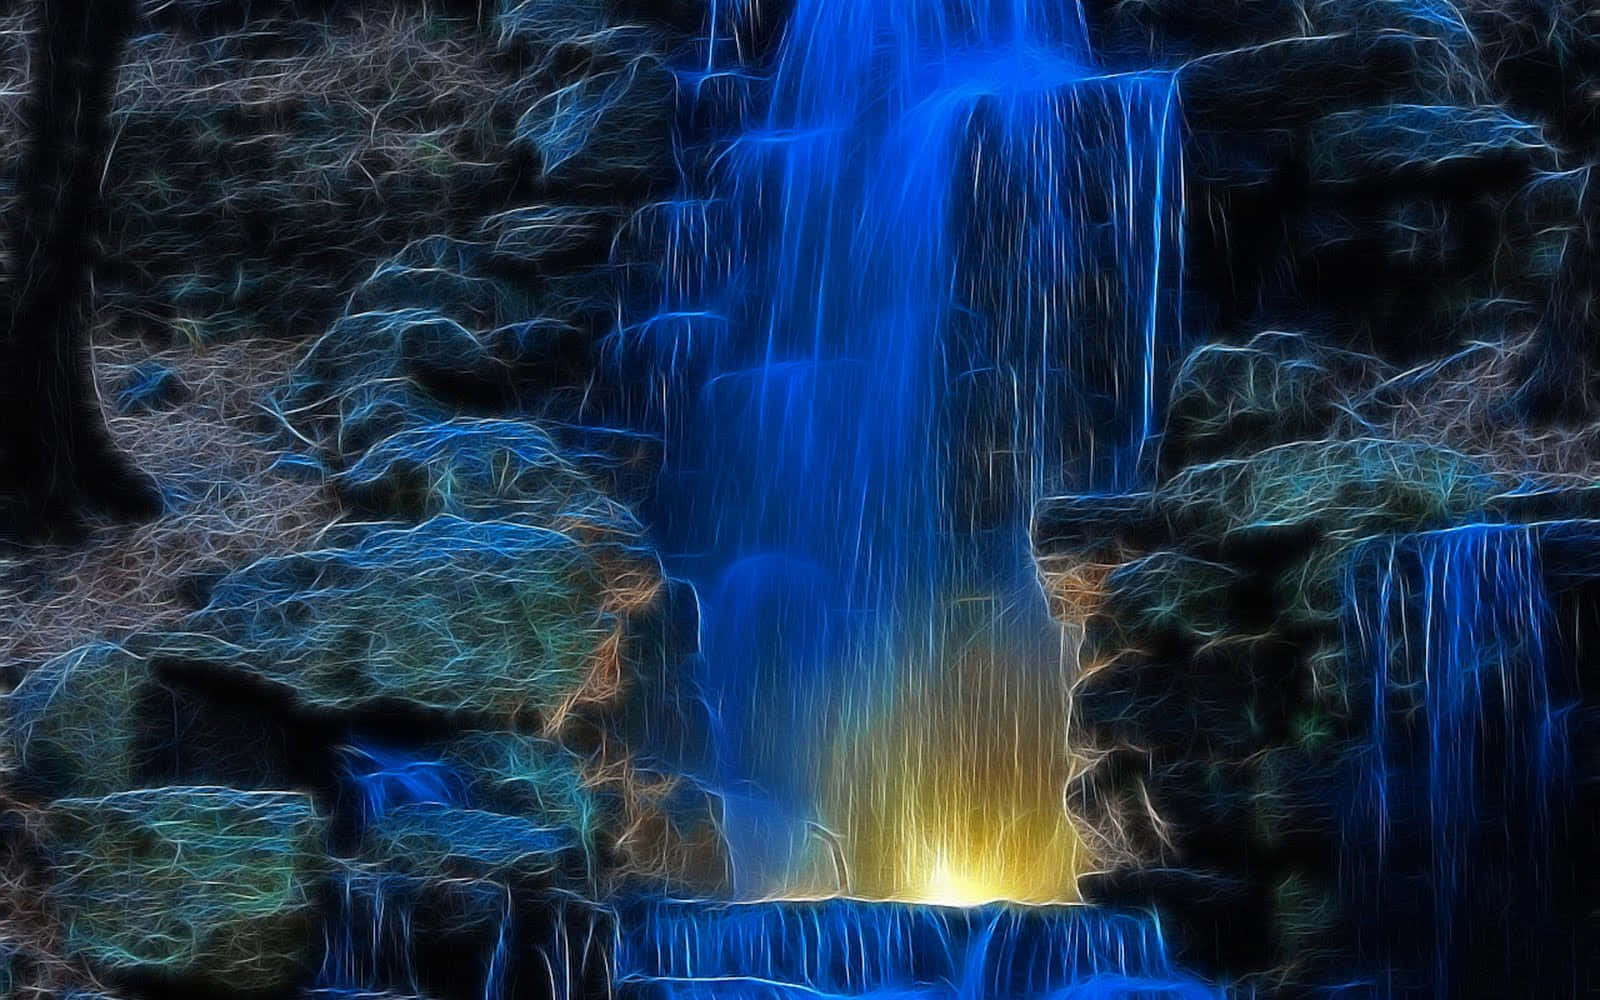 Impresionantefondo De Pantalla De Cascada En 3d. Fondo de pantalla